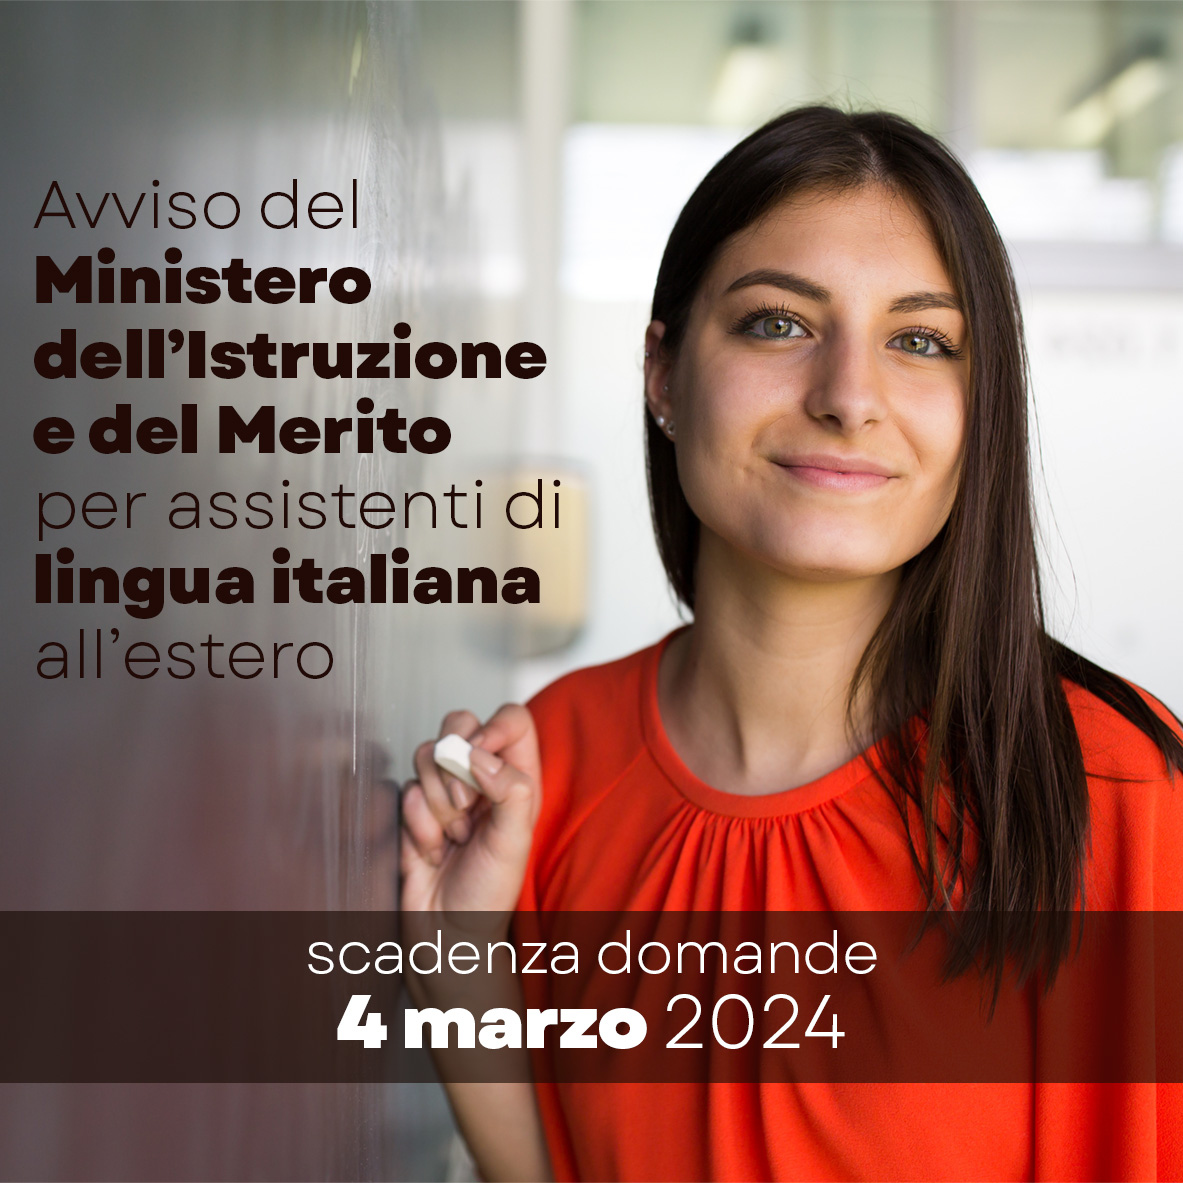 Opportunità per assistenti di lingua italiana all'estero - scadenza domande 4 marzo 2024